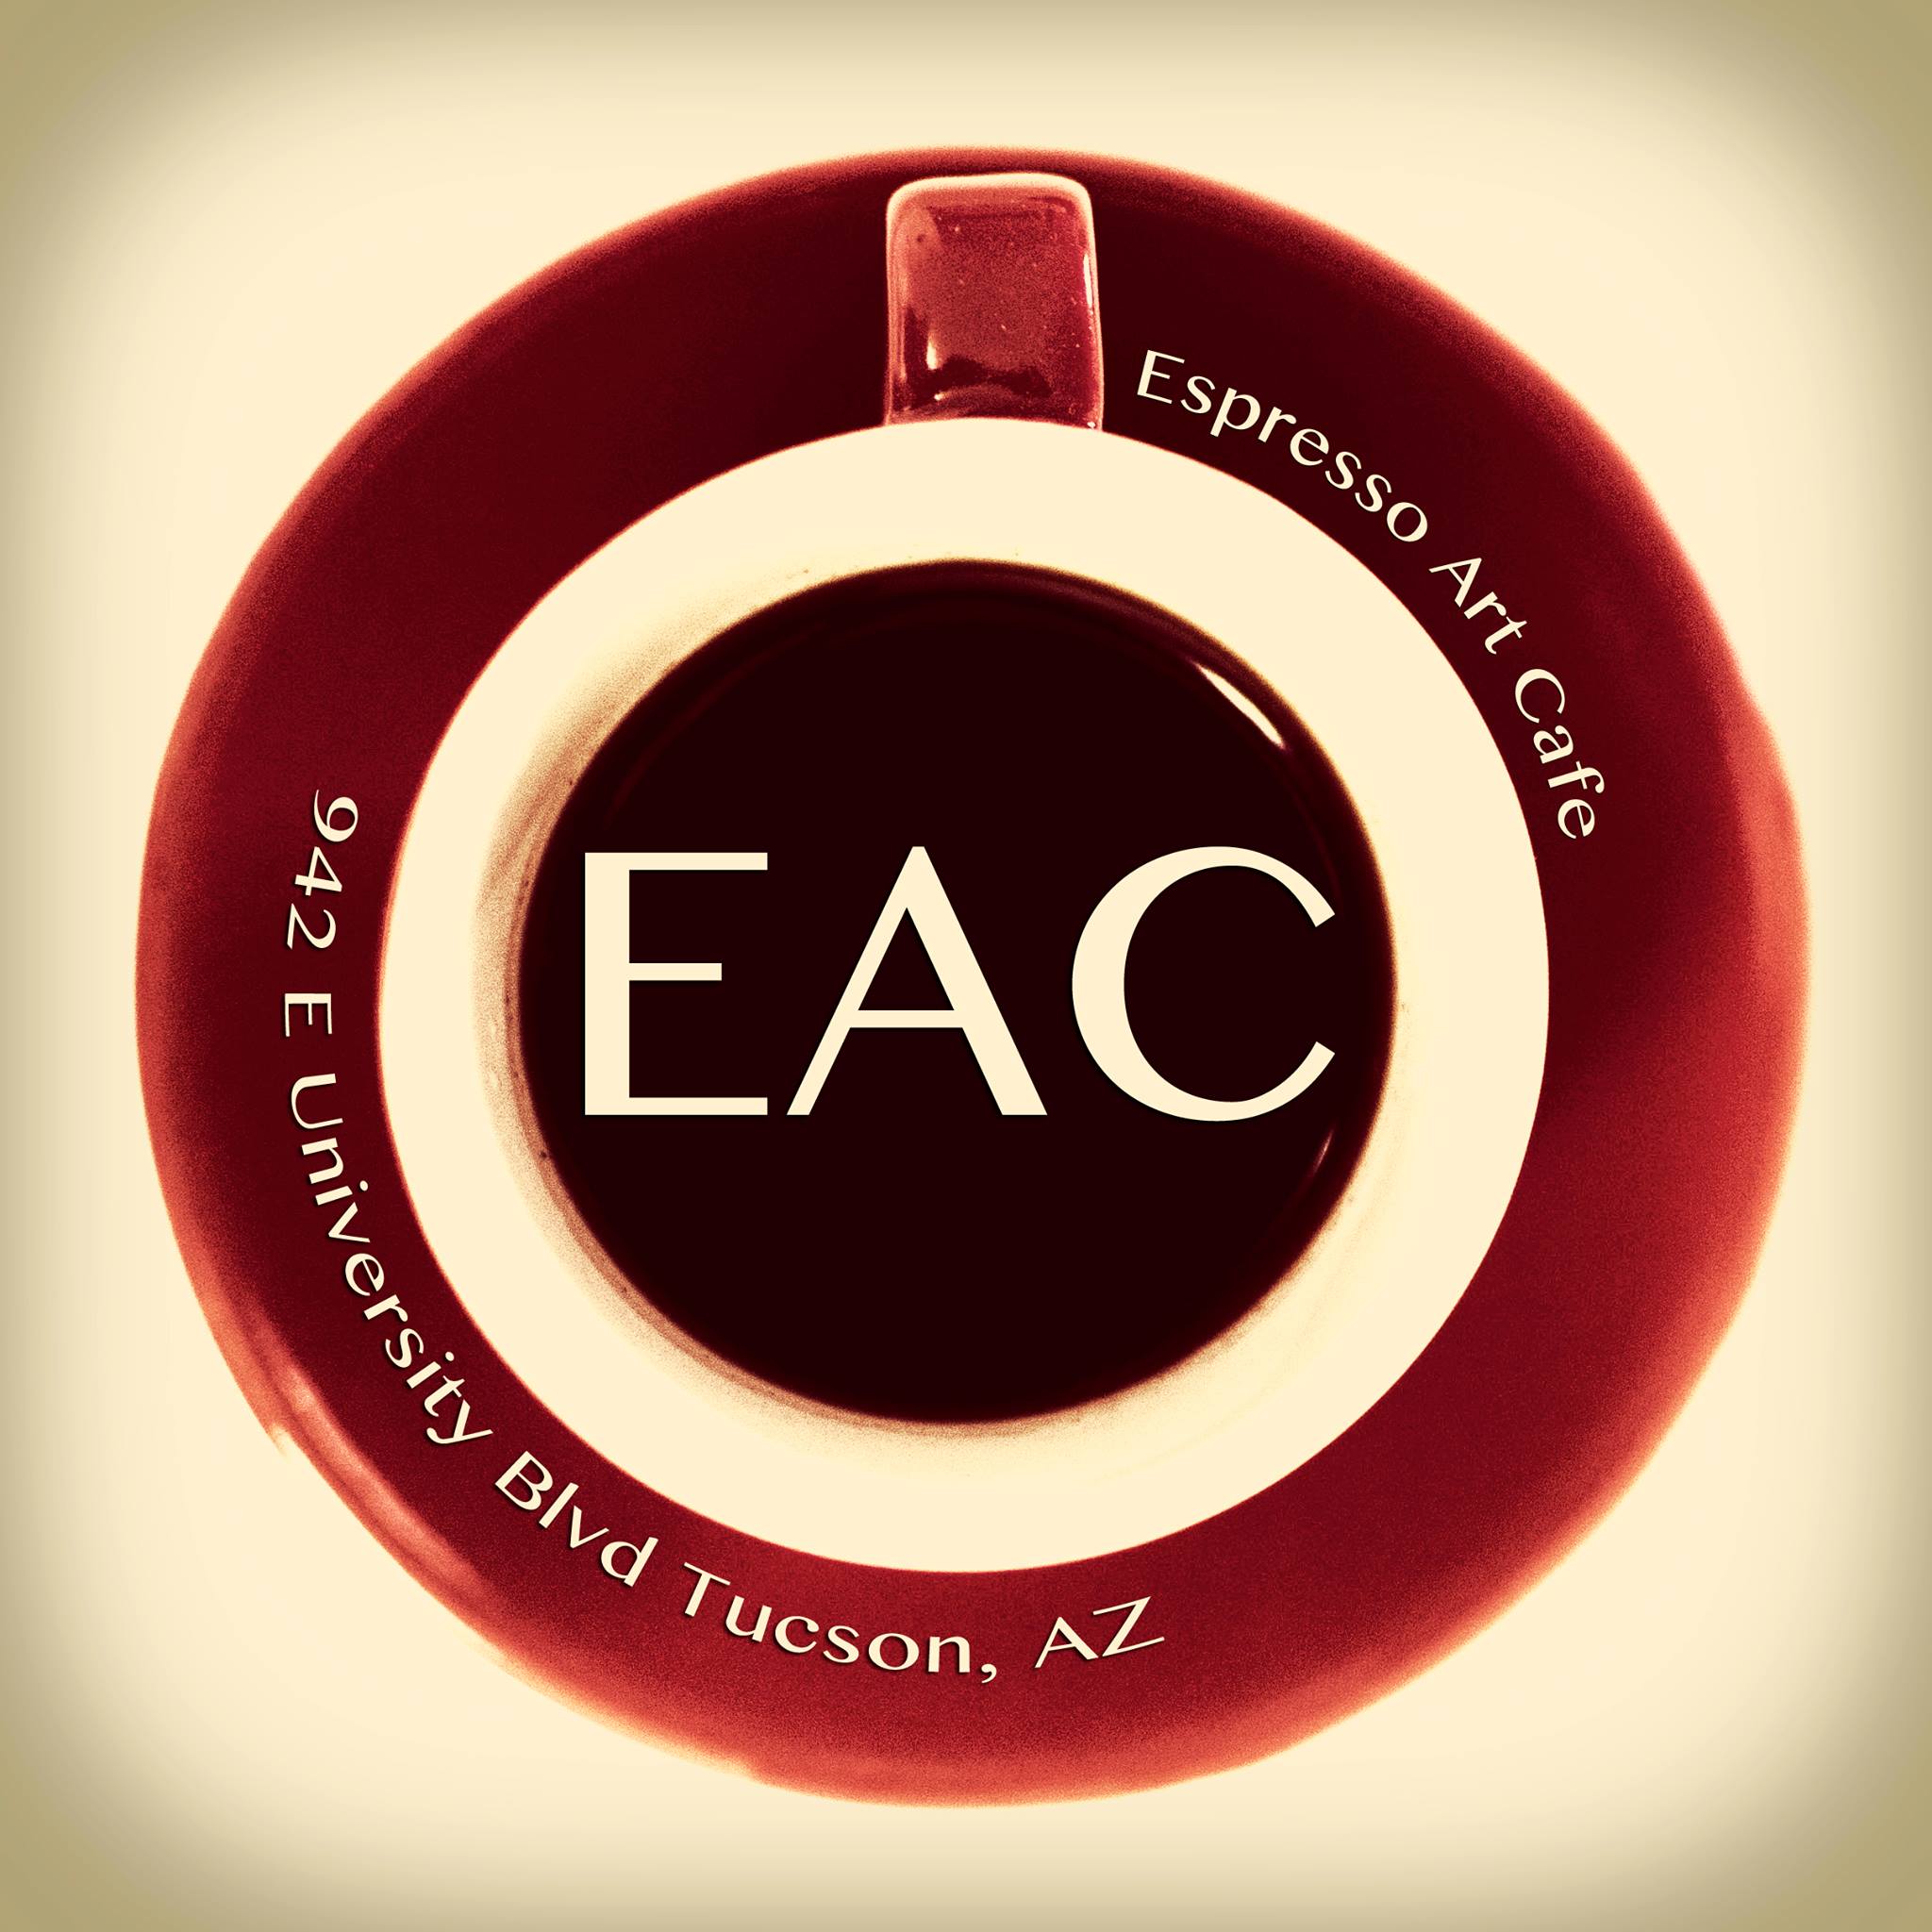 Business logo of Espresso Art Cafe